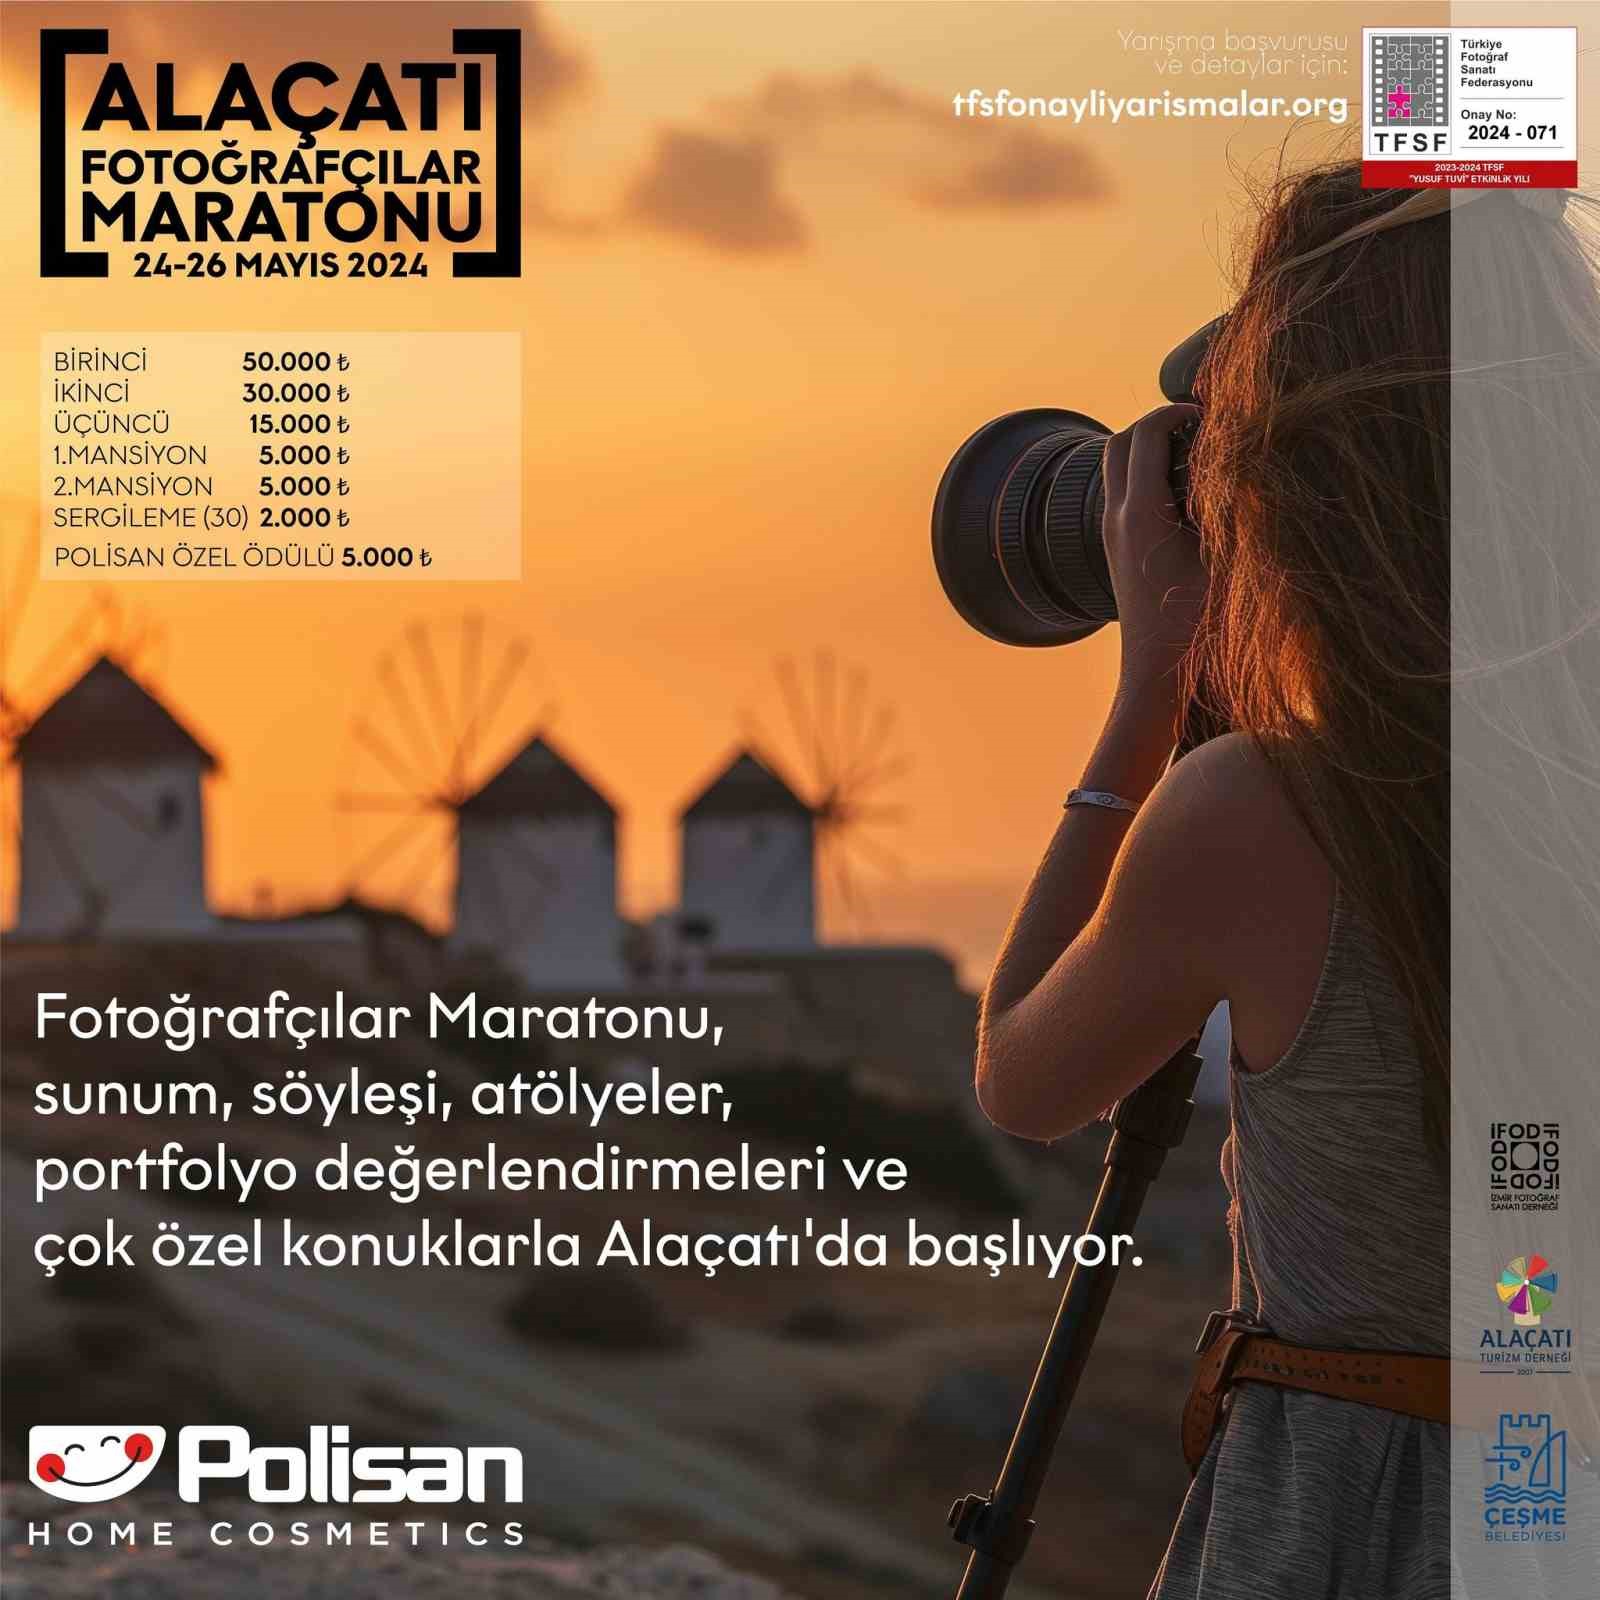 ALAÇATI'DA "ULUSAL FOTOĞRAFÇILAR MARATONU" DÜZENLENECEK